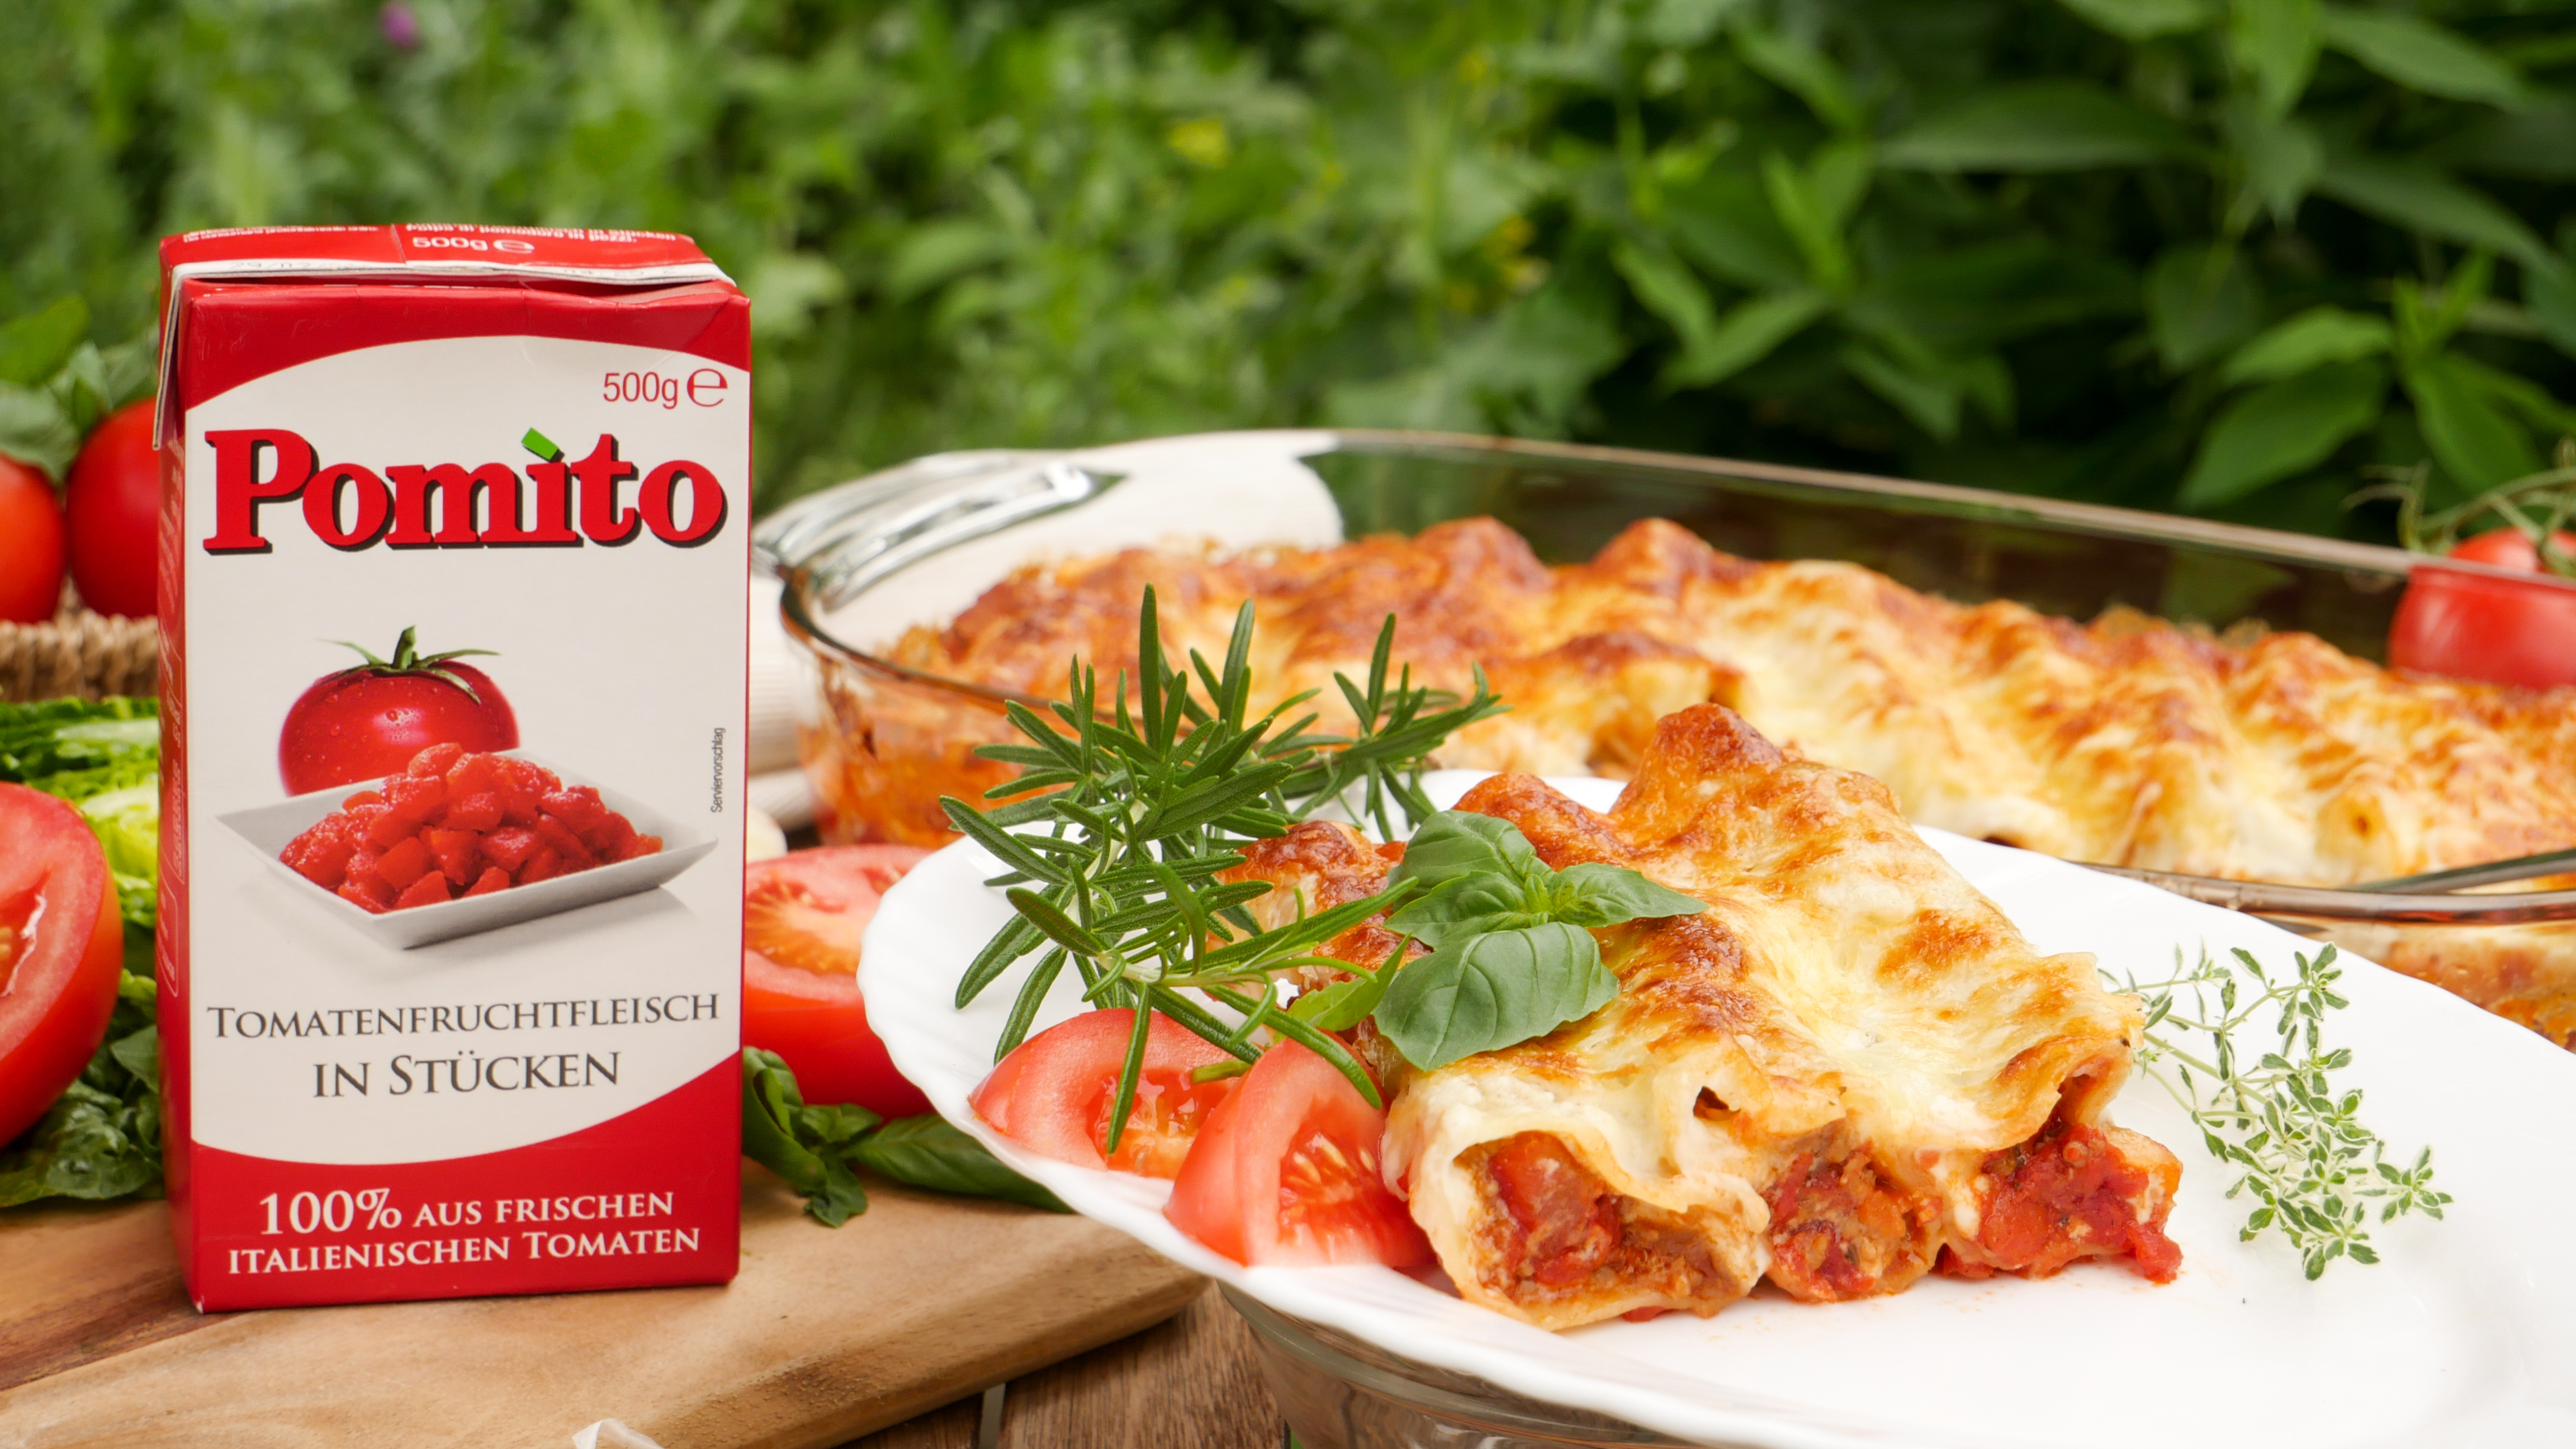 Rezept: Cannelloni al Forno mit Tomaten Hackfleischfüllung